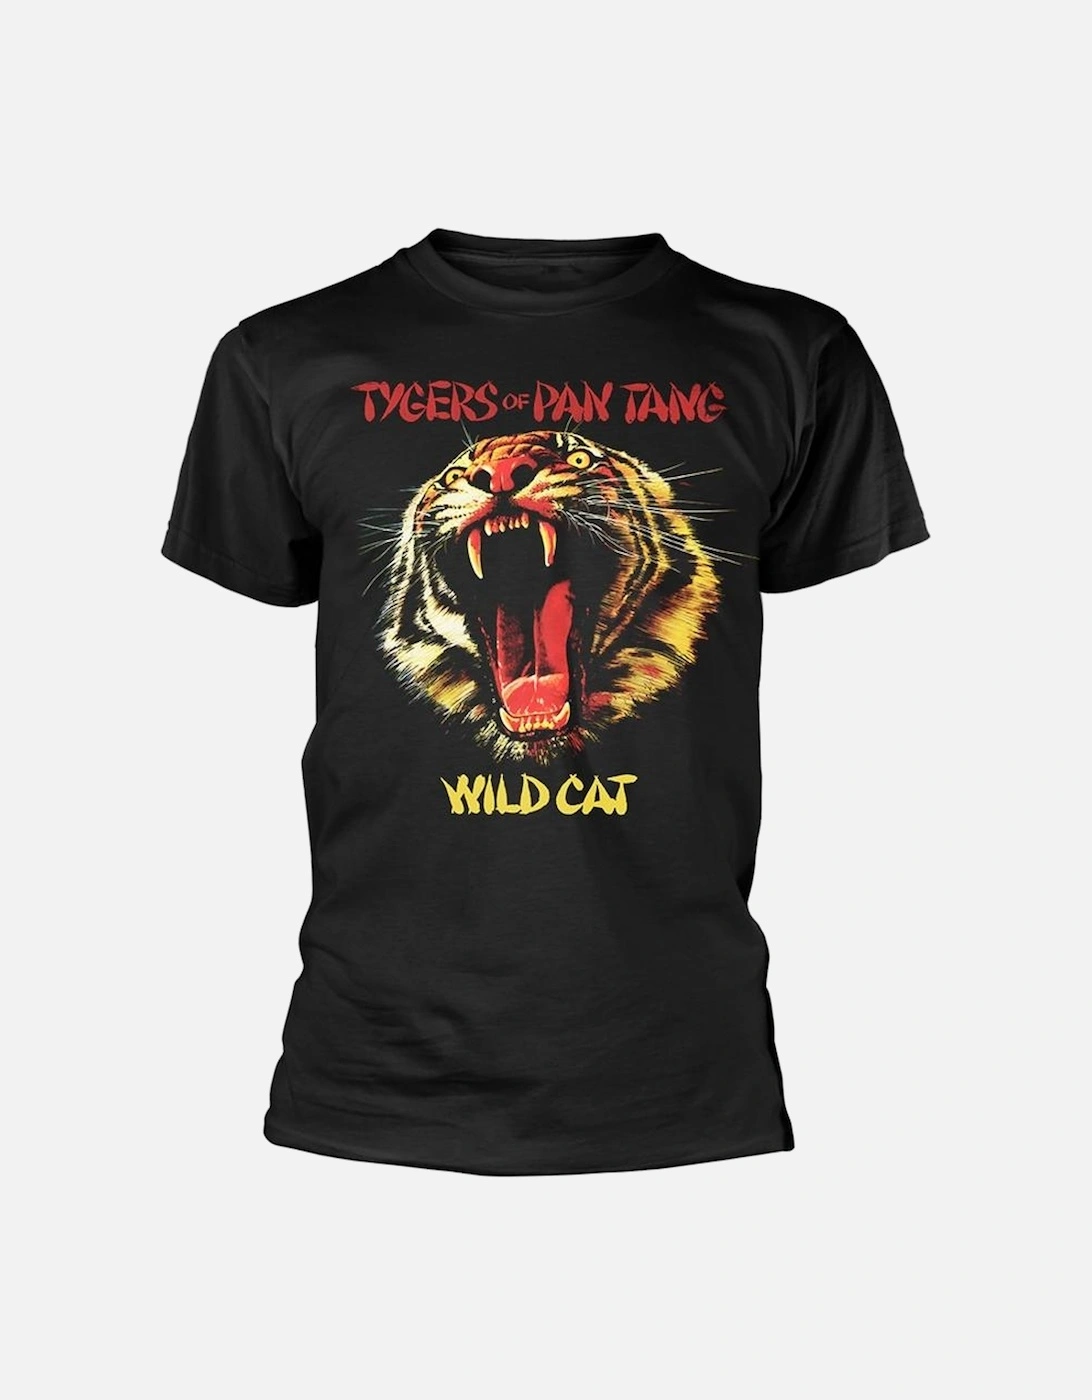 Unisex Adult Wild Cat T-Shirt, 2 of 1